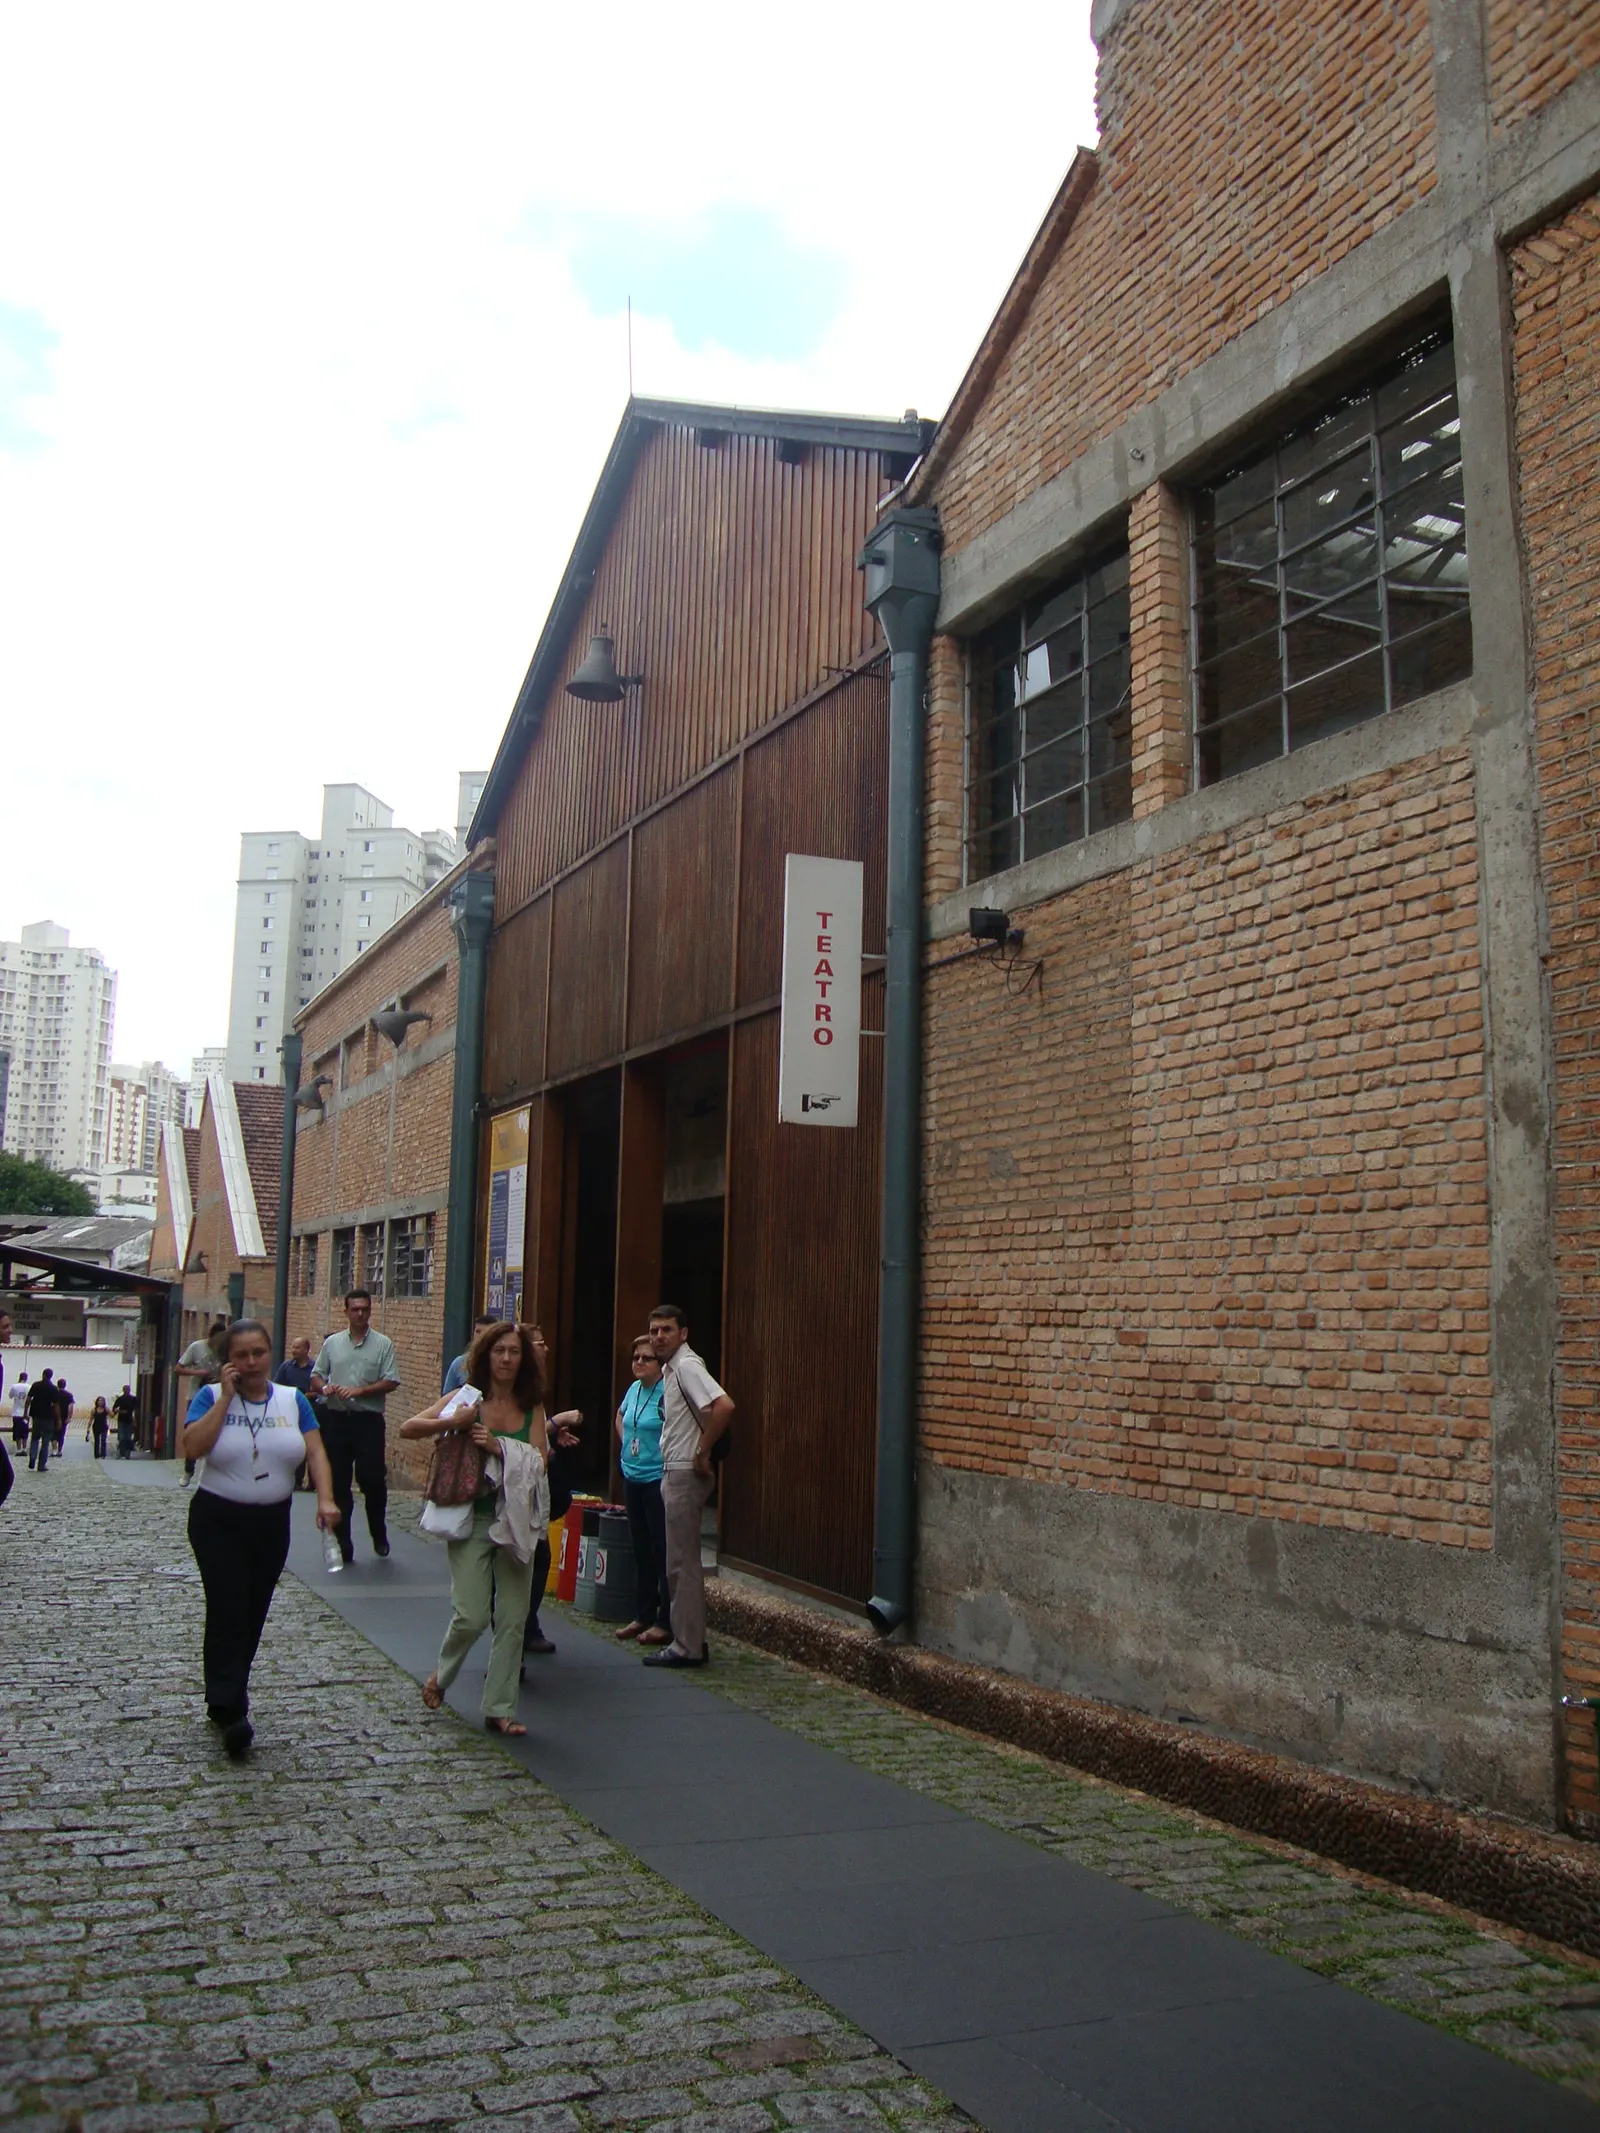 Nella prima fase dei lavori, il restauro dei vecchi capannoni della fabbrica da parte di Lina Bo Bardi. 2010. Foto Cassia Monteiro.